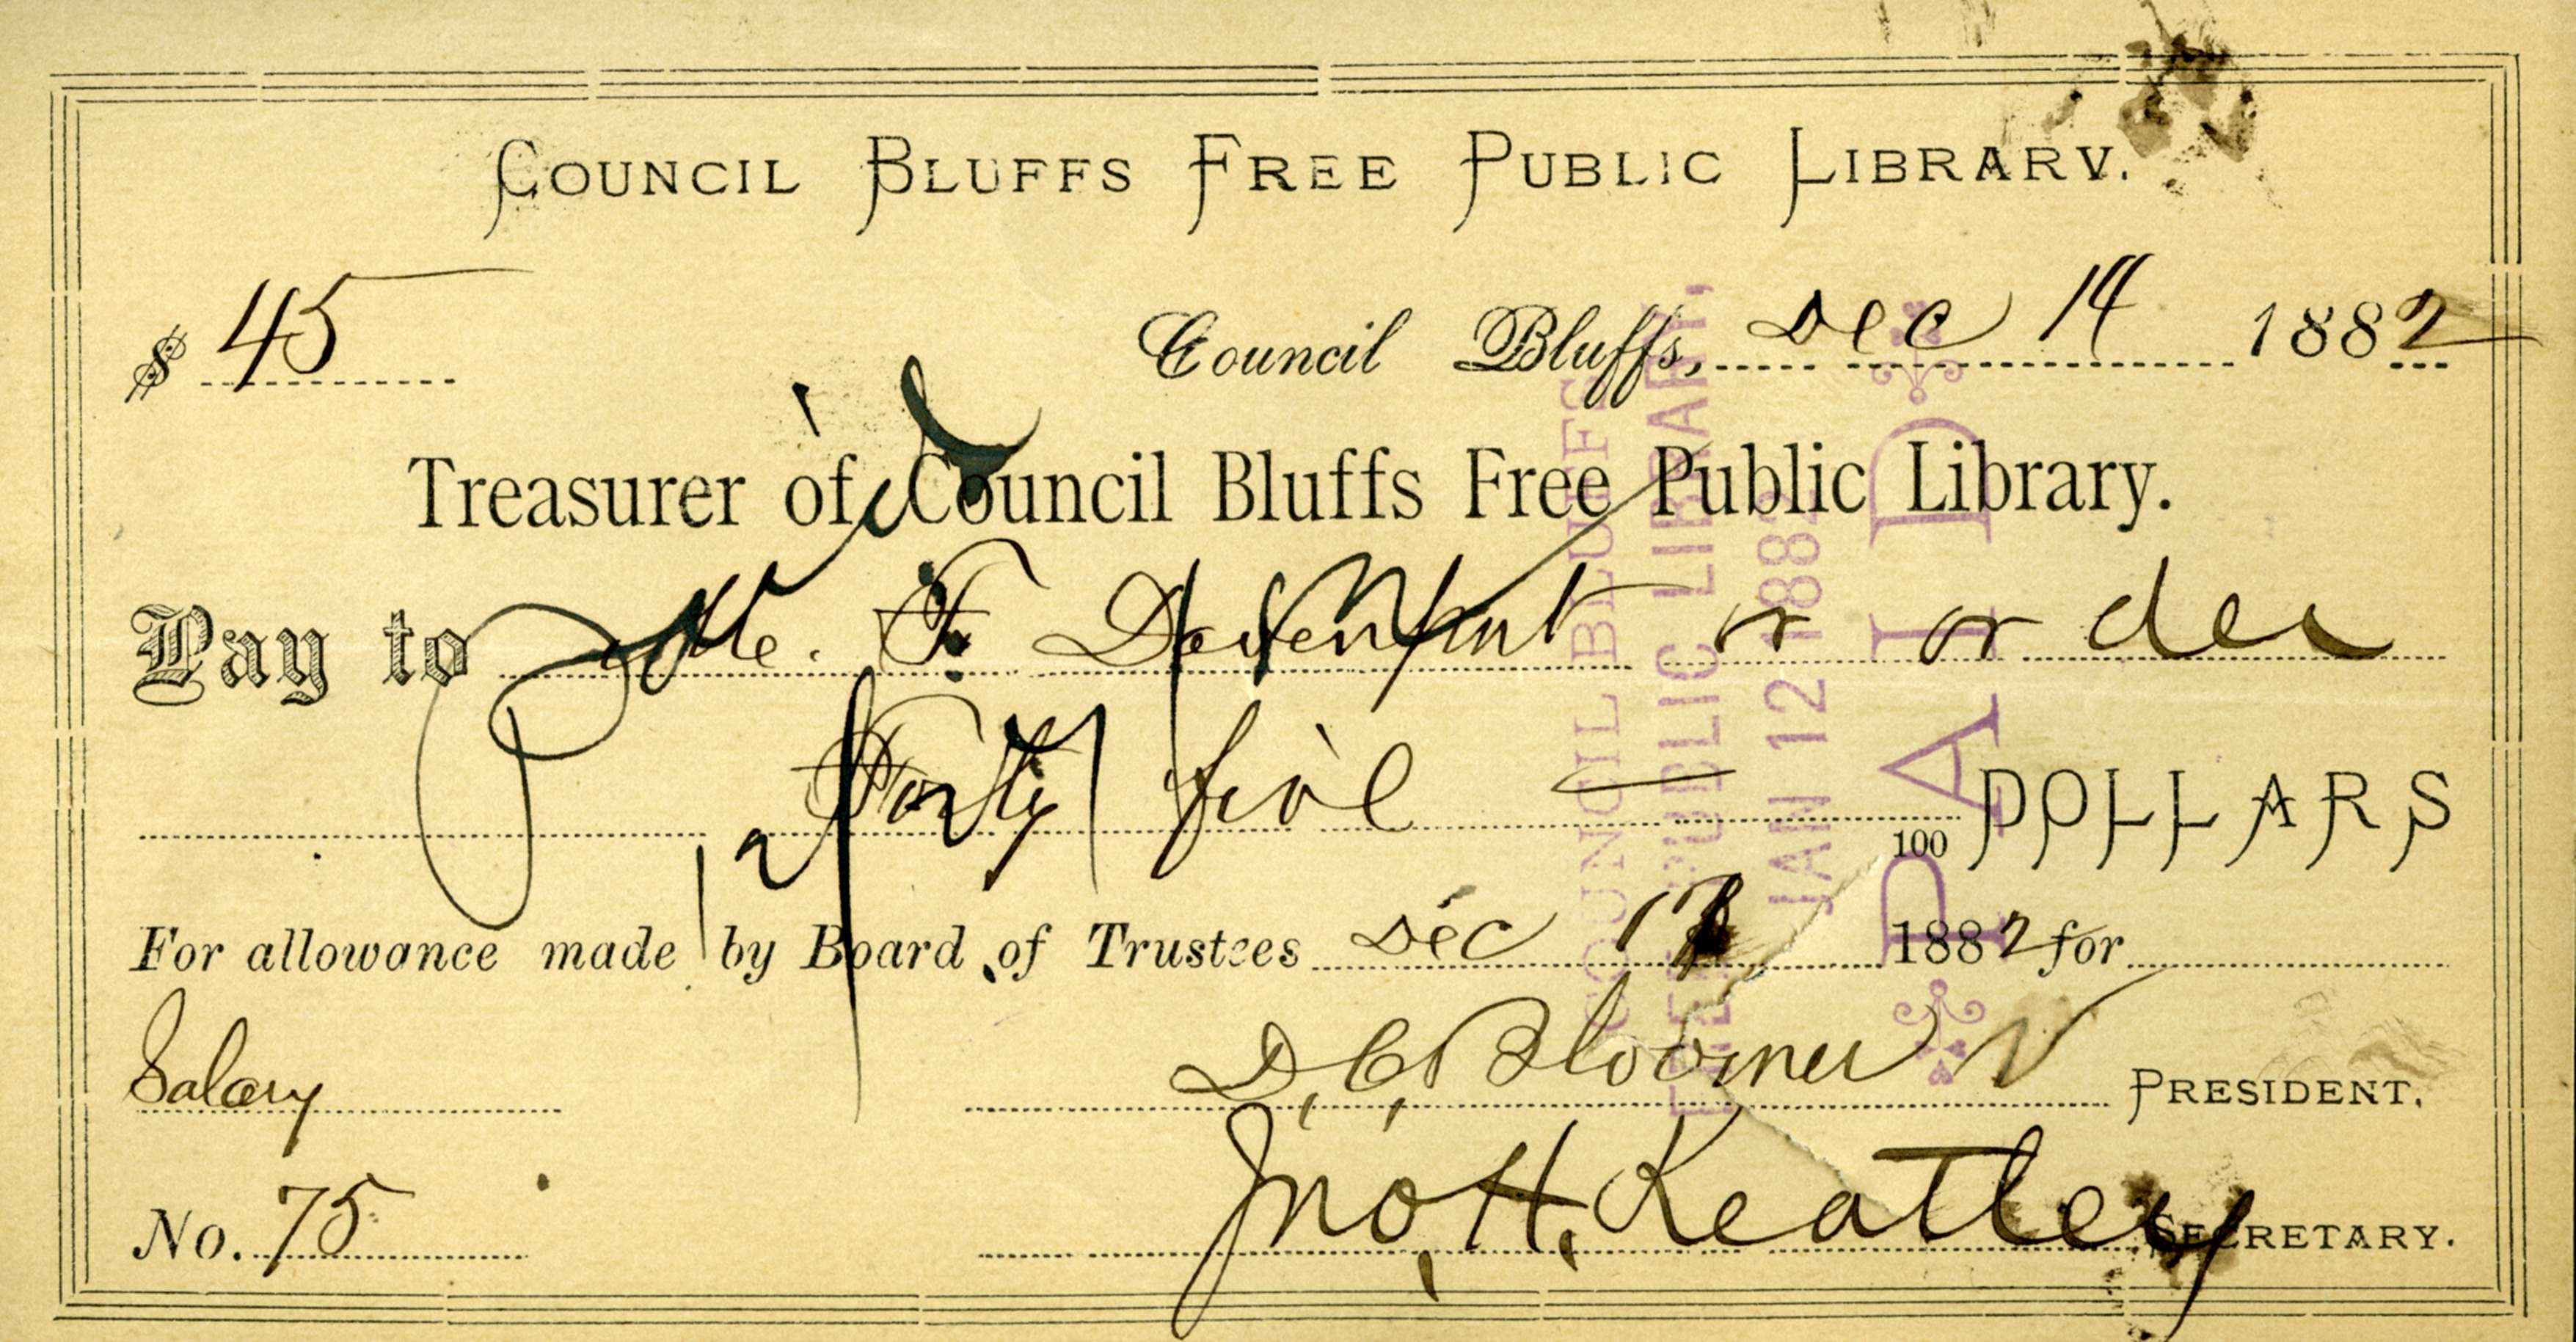 Salary check to Mrs. Davenport, 1882.